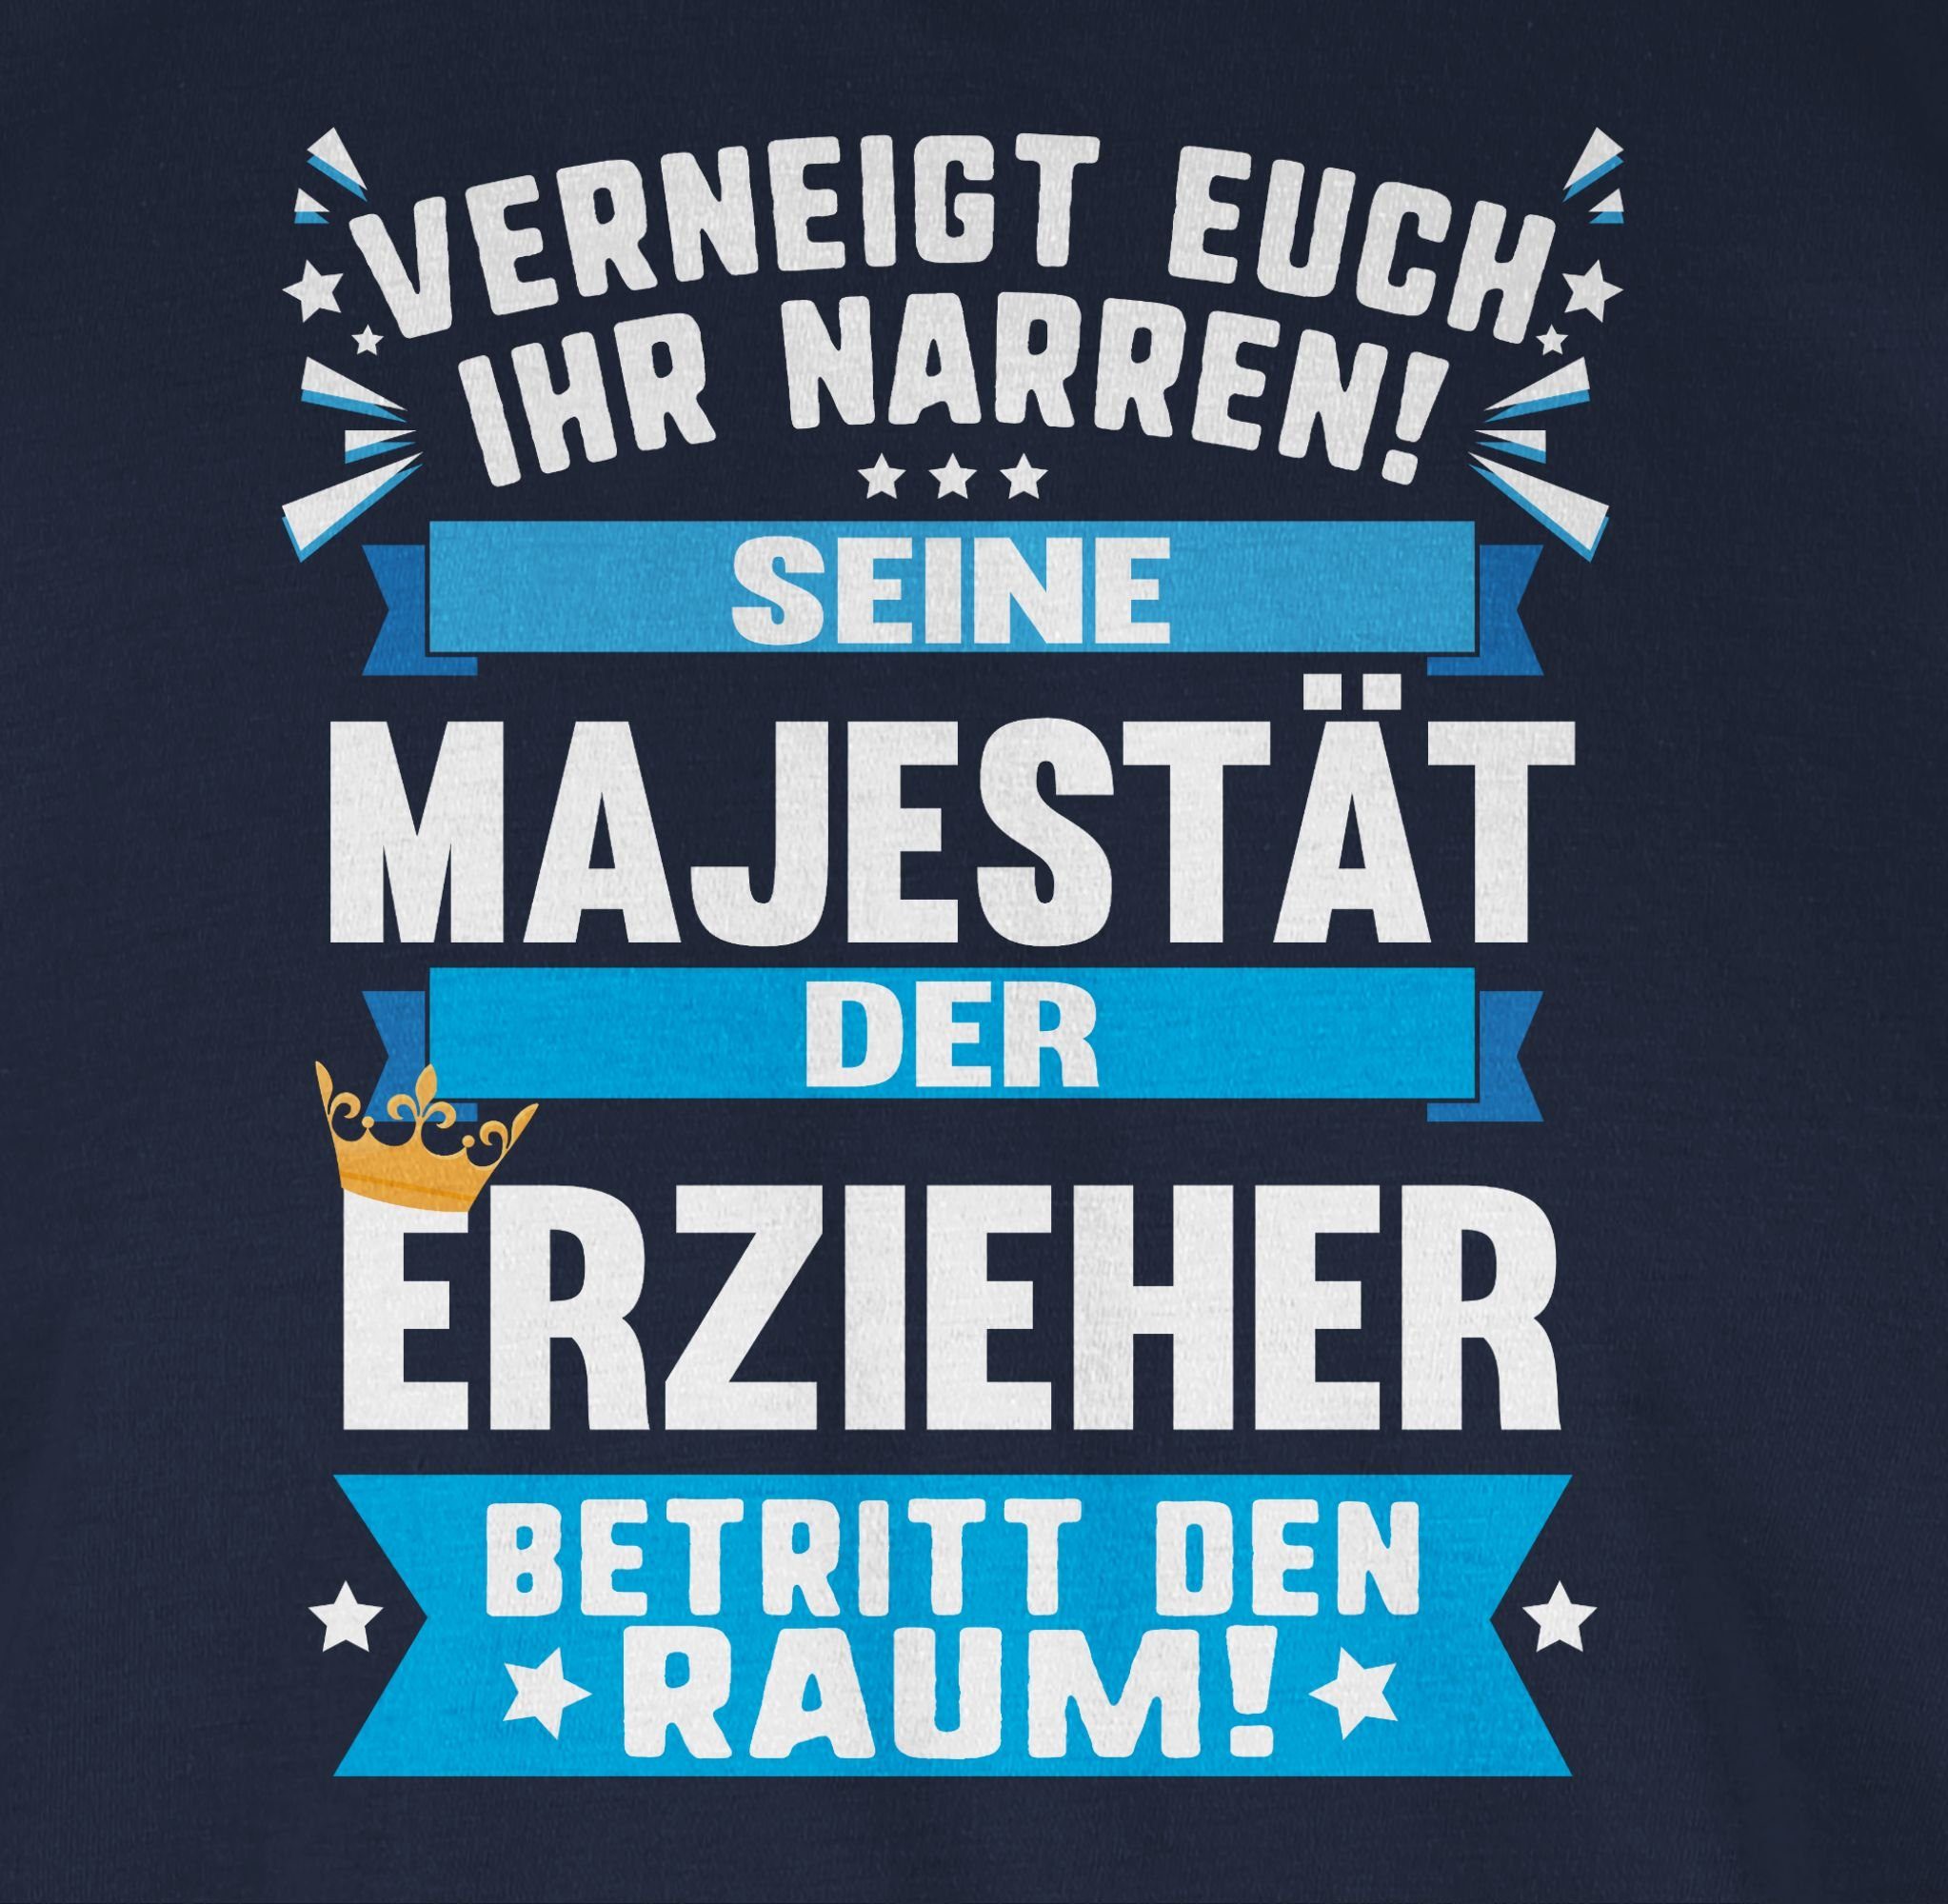 Erzieher Majestät Beruf Geschenke T-Shirt Shirtracer Blau der und Seine Job Navy 02